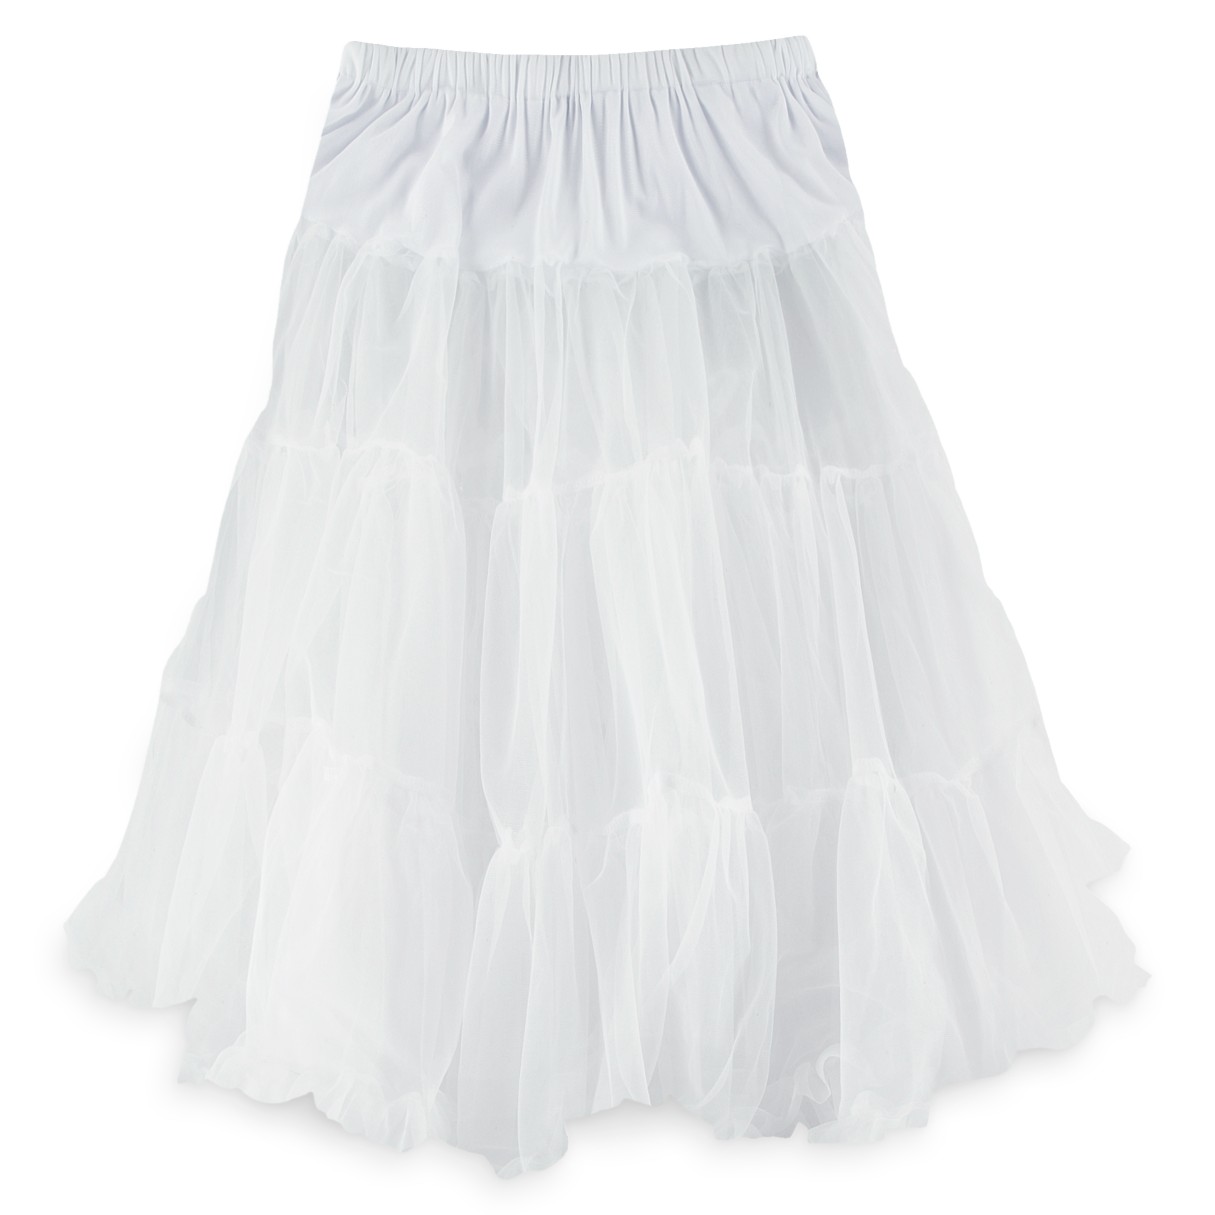 White Crinoline Petticoat